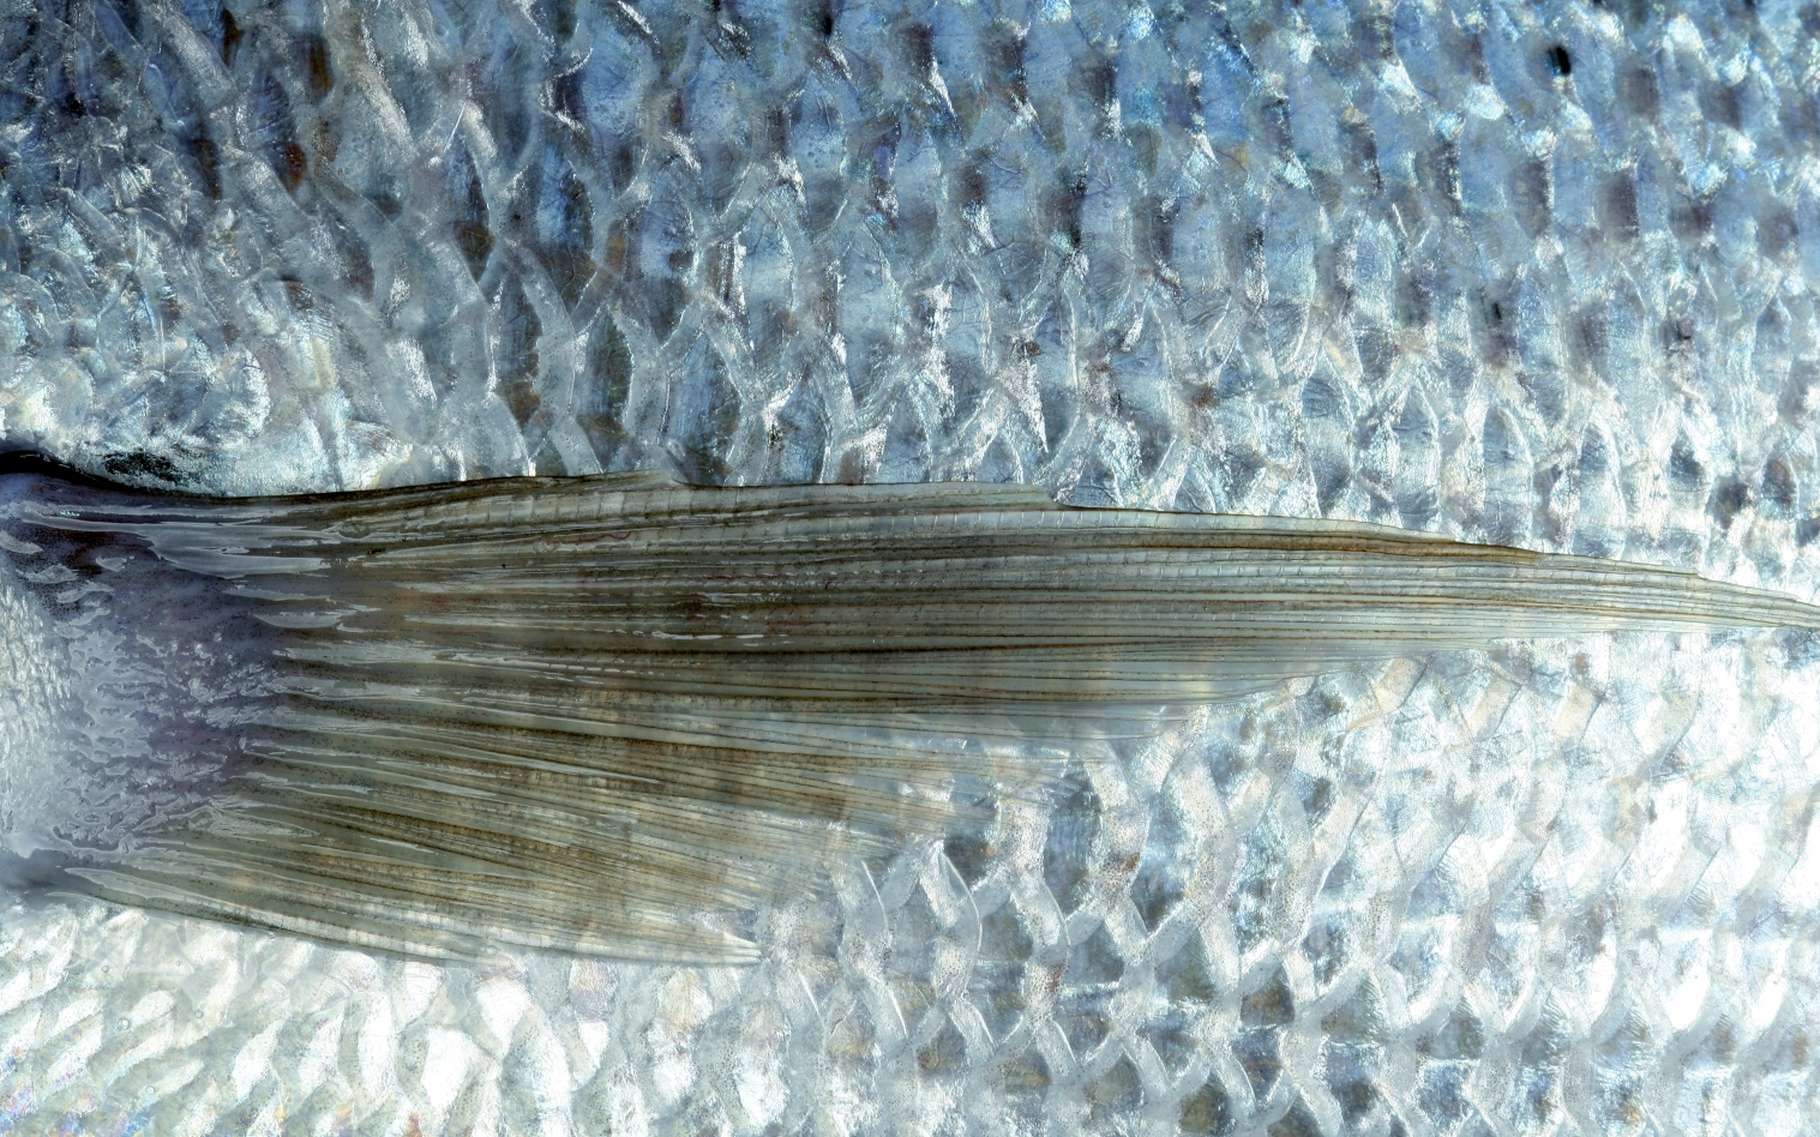 Ce n'est pas un poisson d'avril : des écailles pourraient servir à produire (un peu) d'électricité. © holbox, Shutterstock